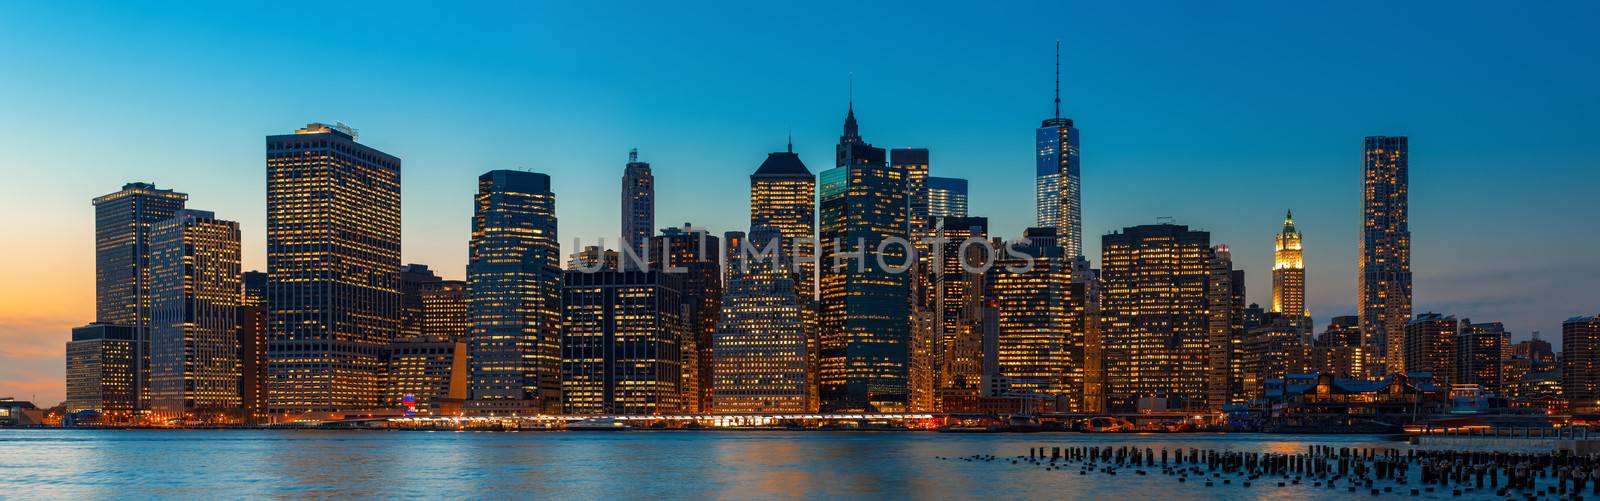 Evening New York City skyline panorama by palinchak